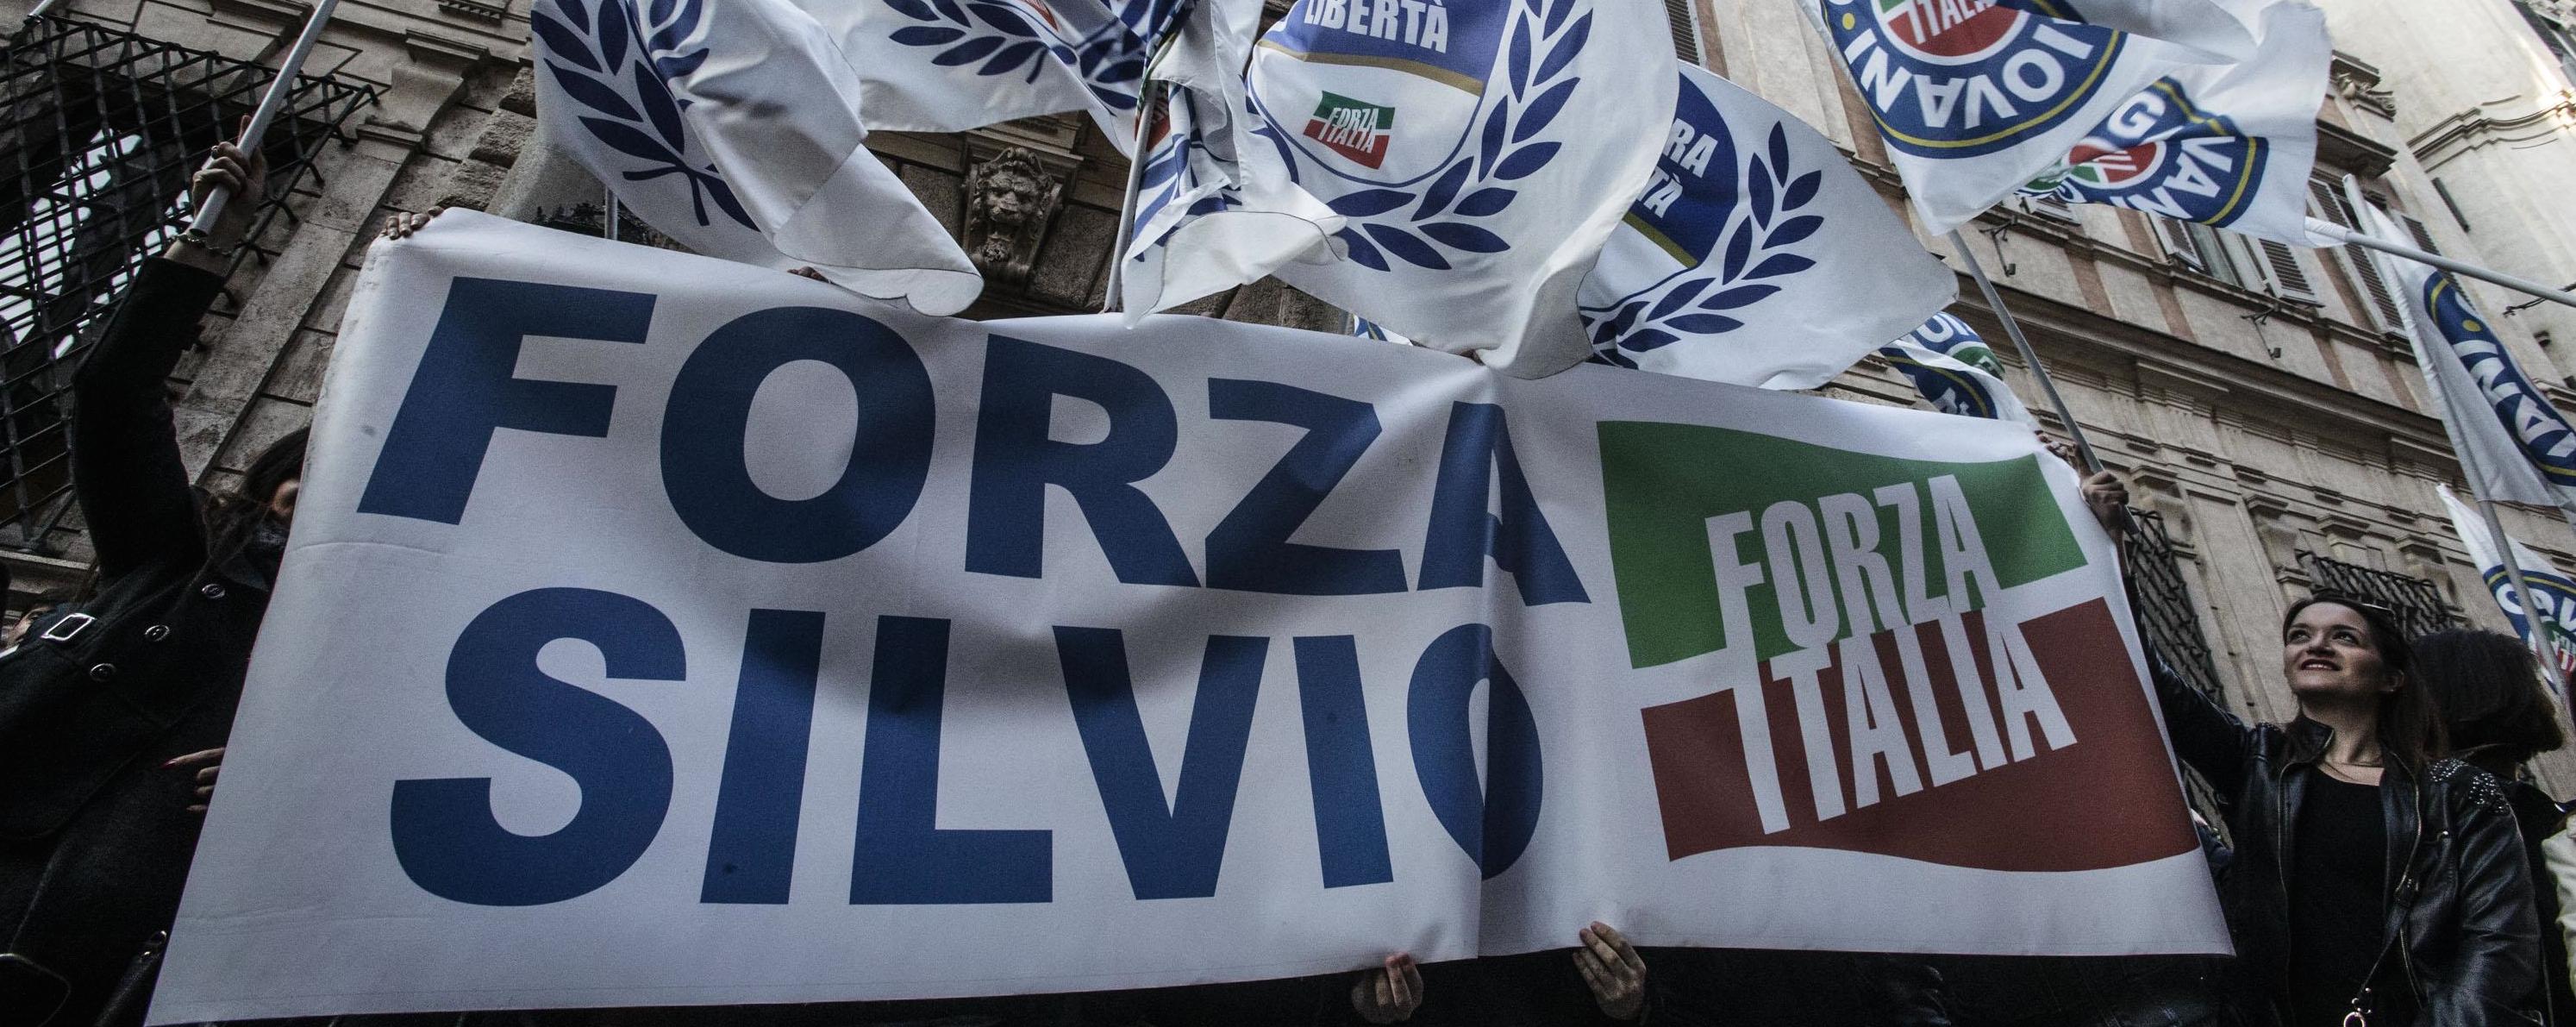 Una manifestazione di Forza Italia